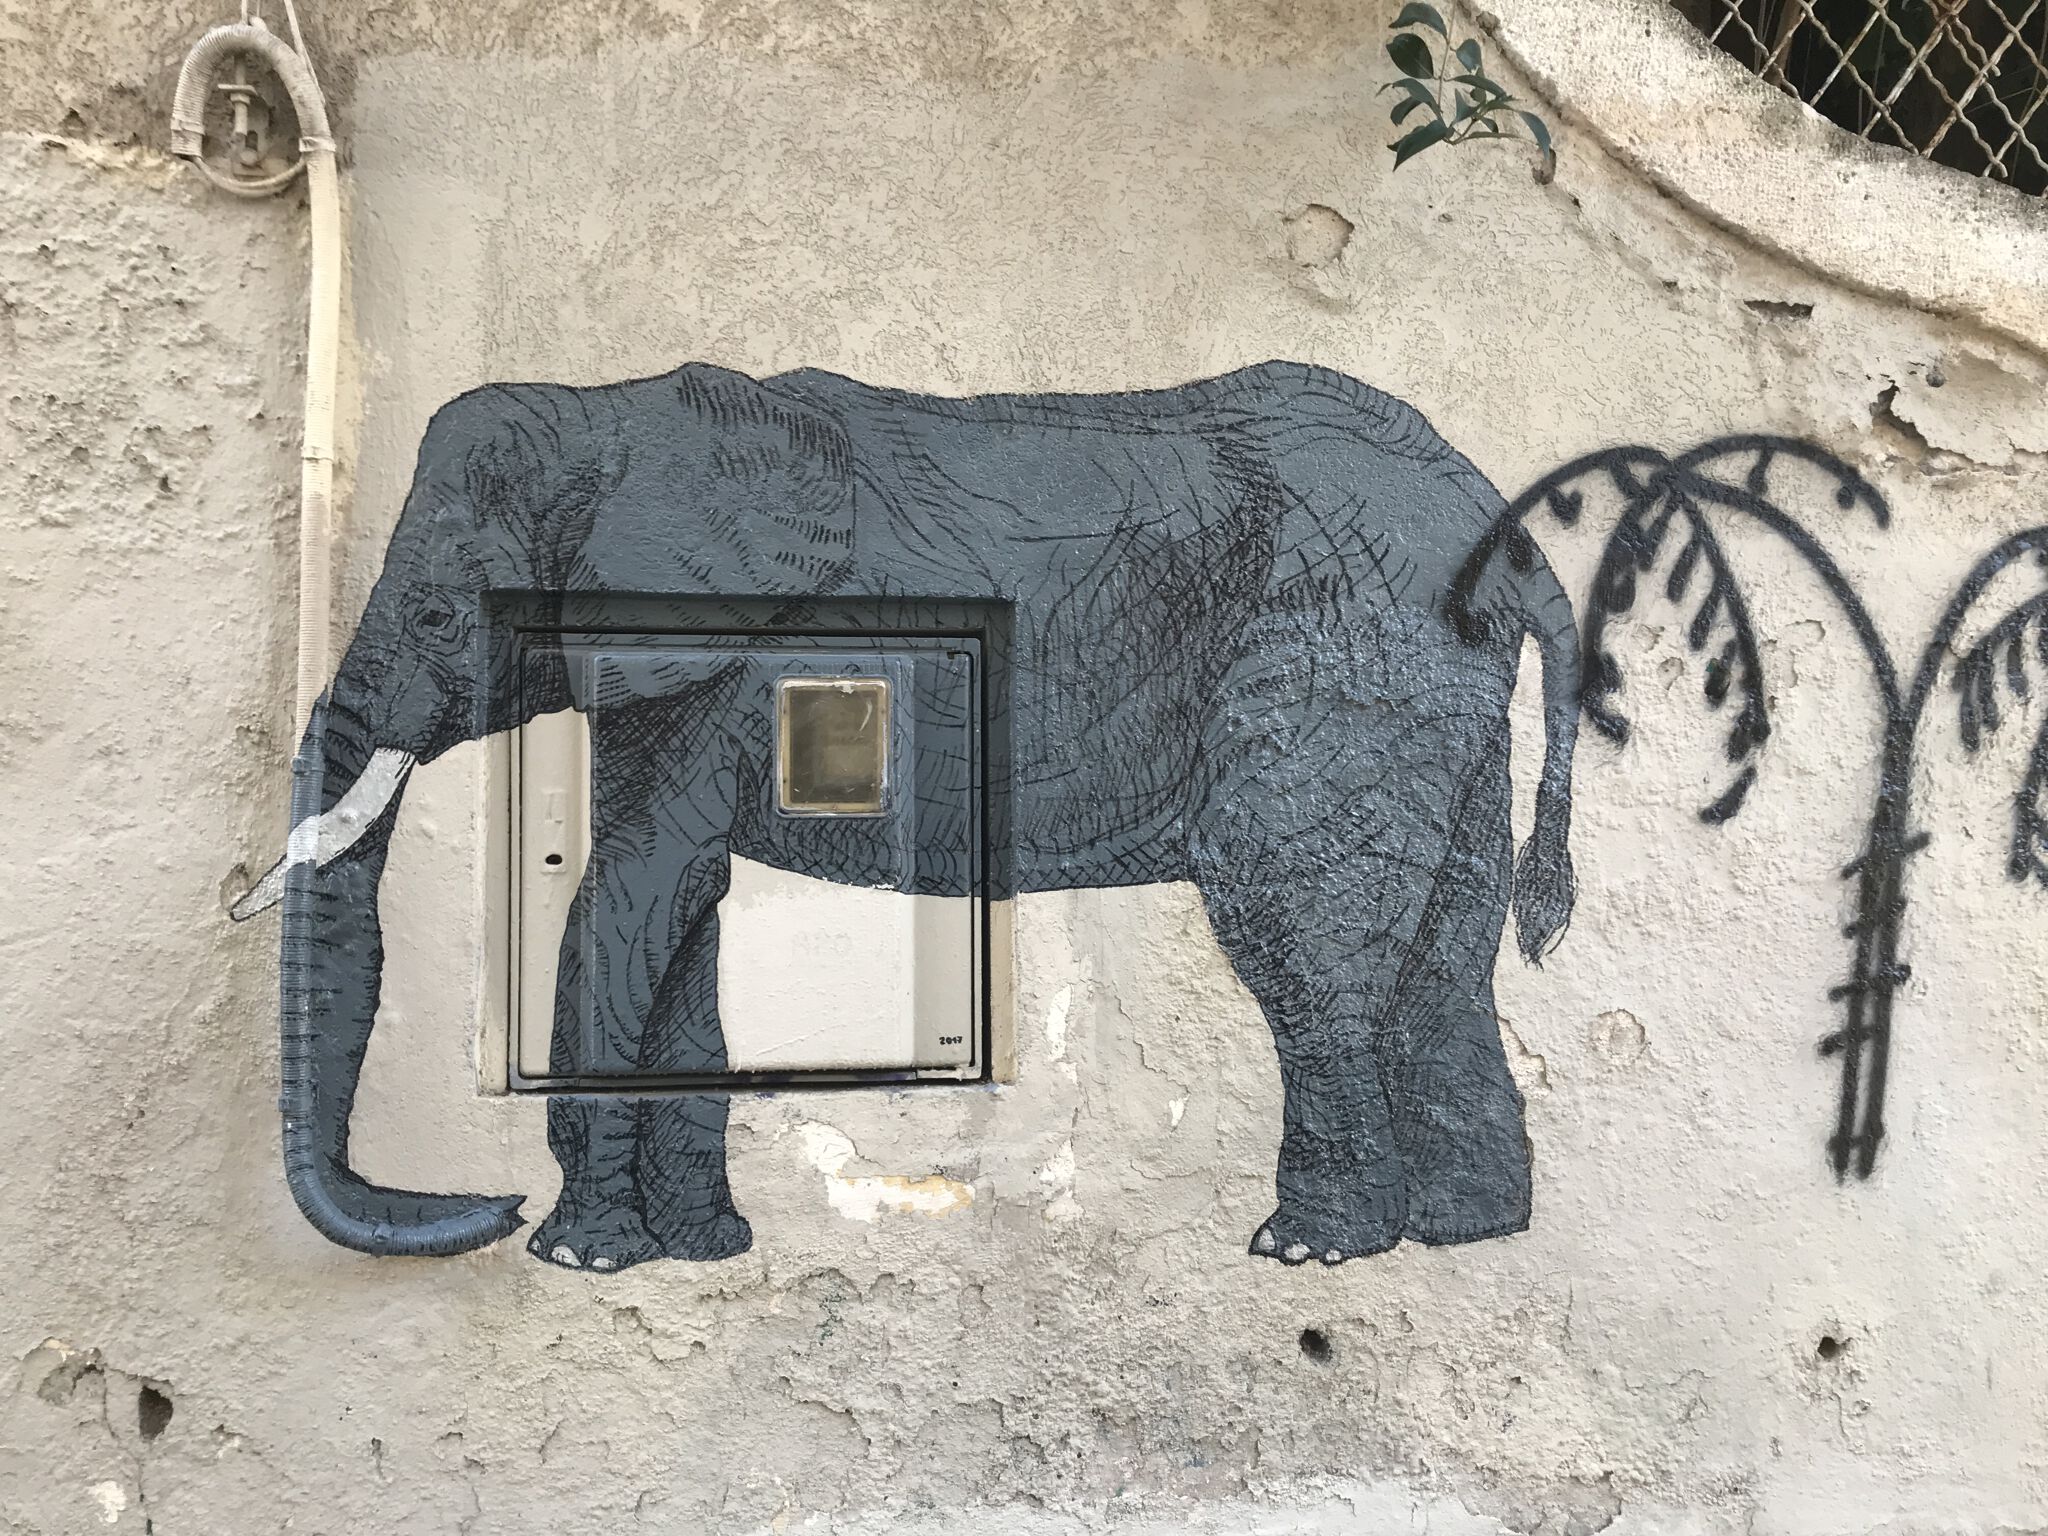 Unknown - Montpellier&mdash;Unknown elephant